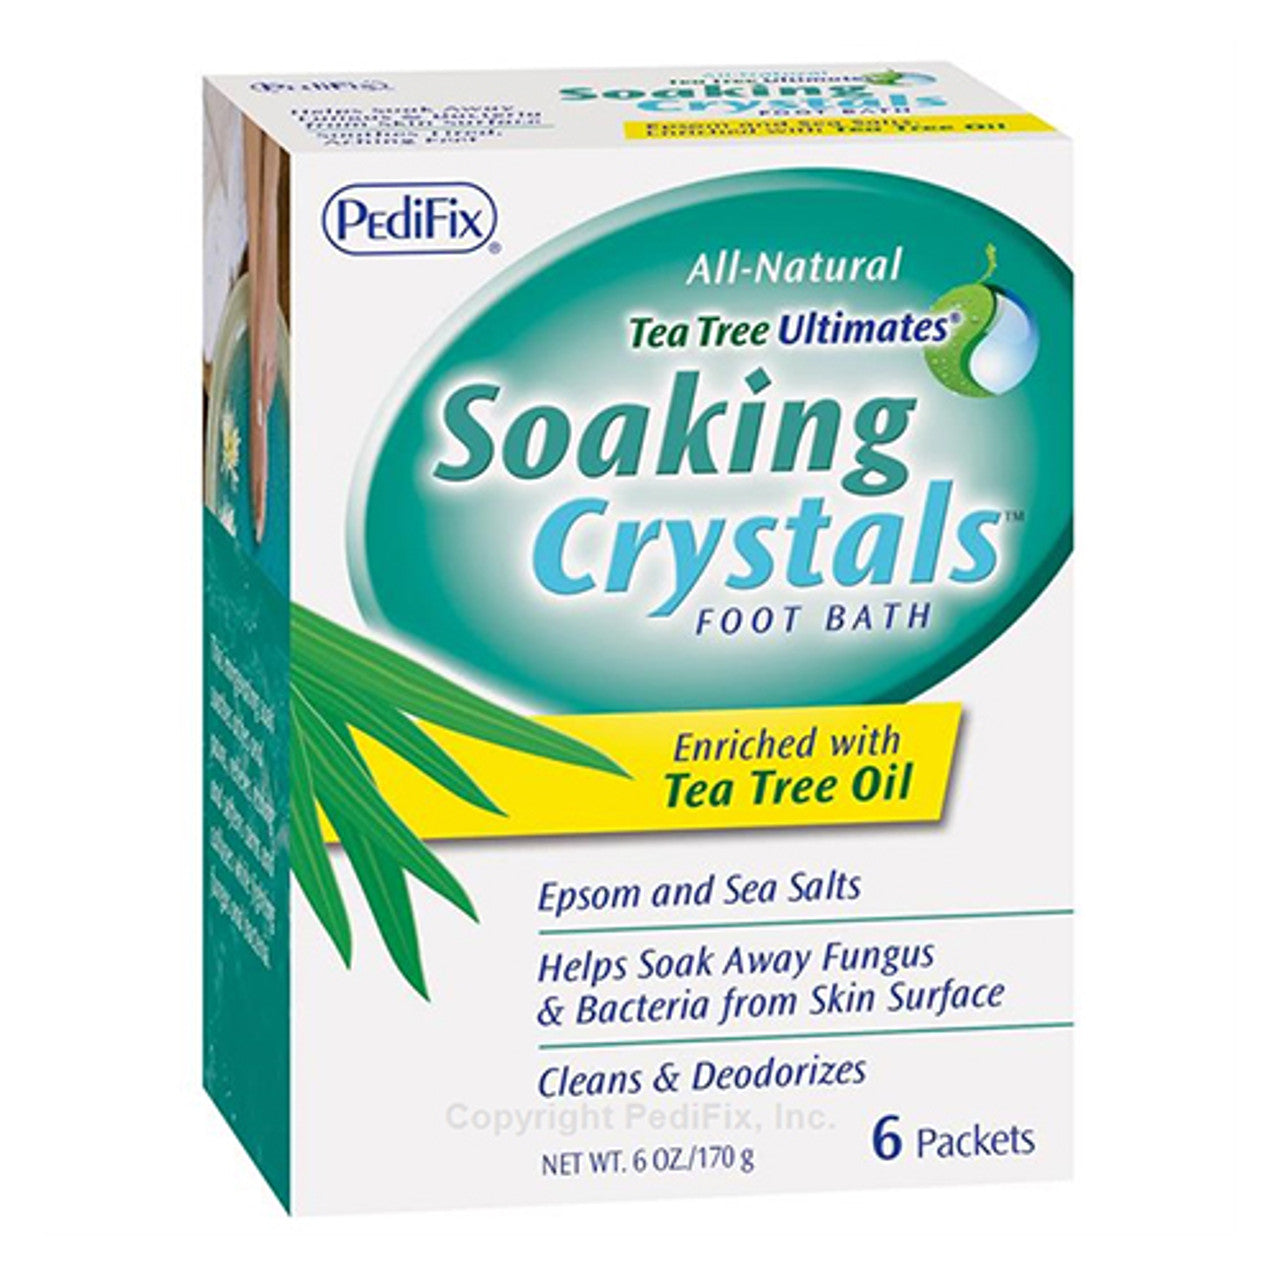 Pedifix All Natural Tea Tree Ultimates Soaking Crystals Foot Bath, 6 oz